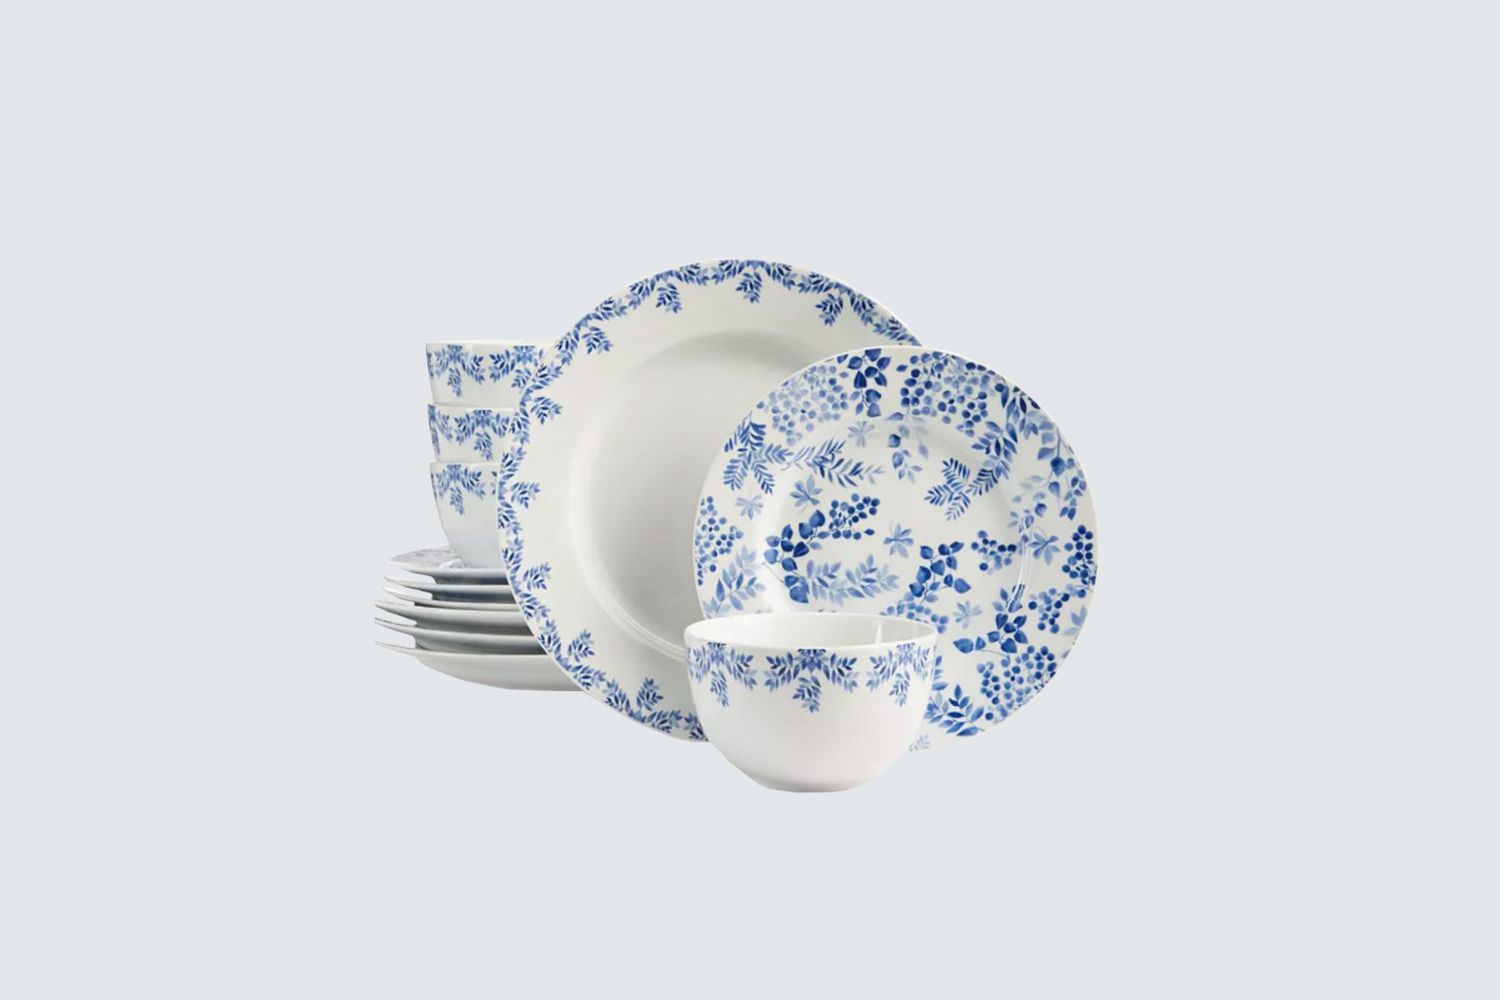 martha stewart collection english garden 12-piece dinnerware set